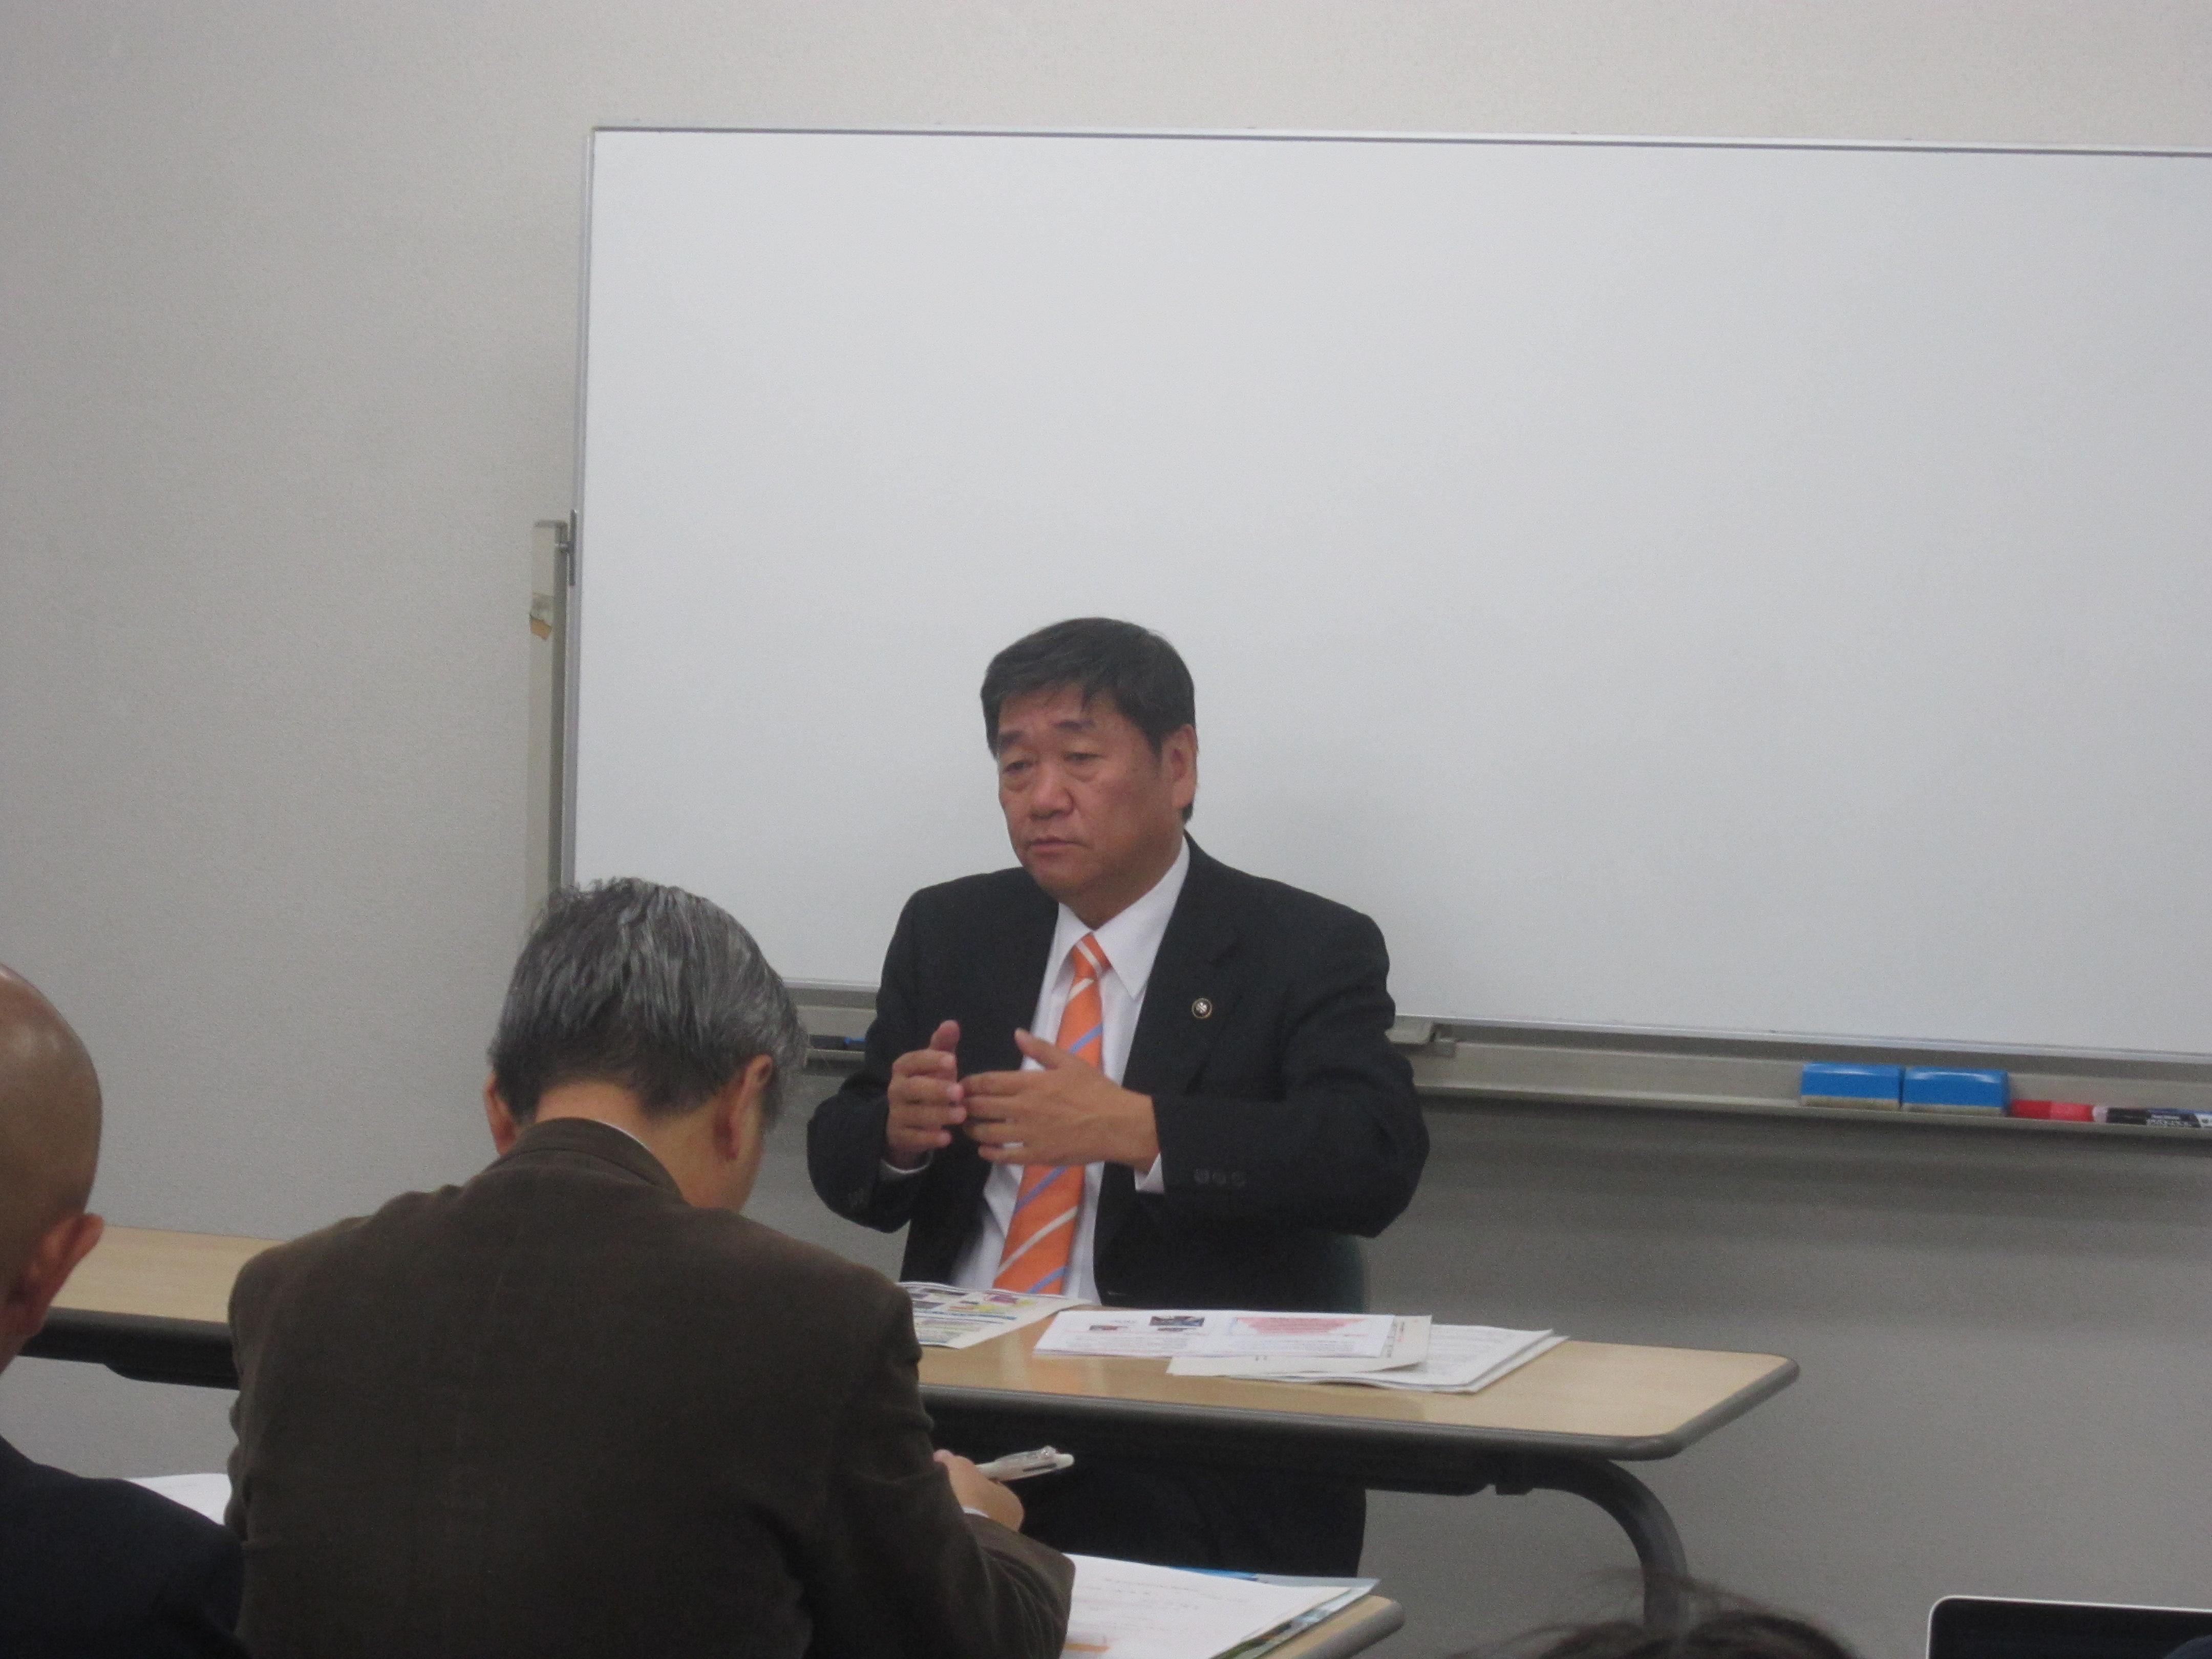 IMG 1919 - 2012年11月27日AOsuki第4回勉強会八戸市小林市長